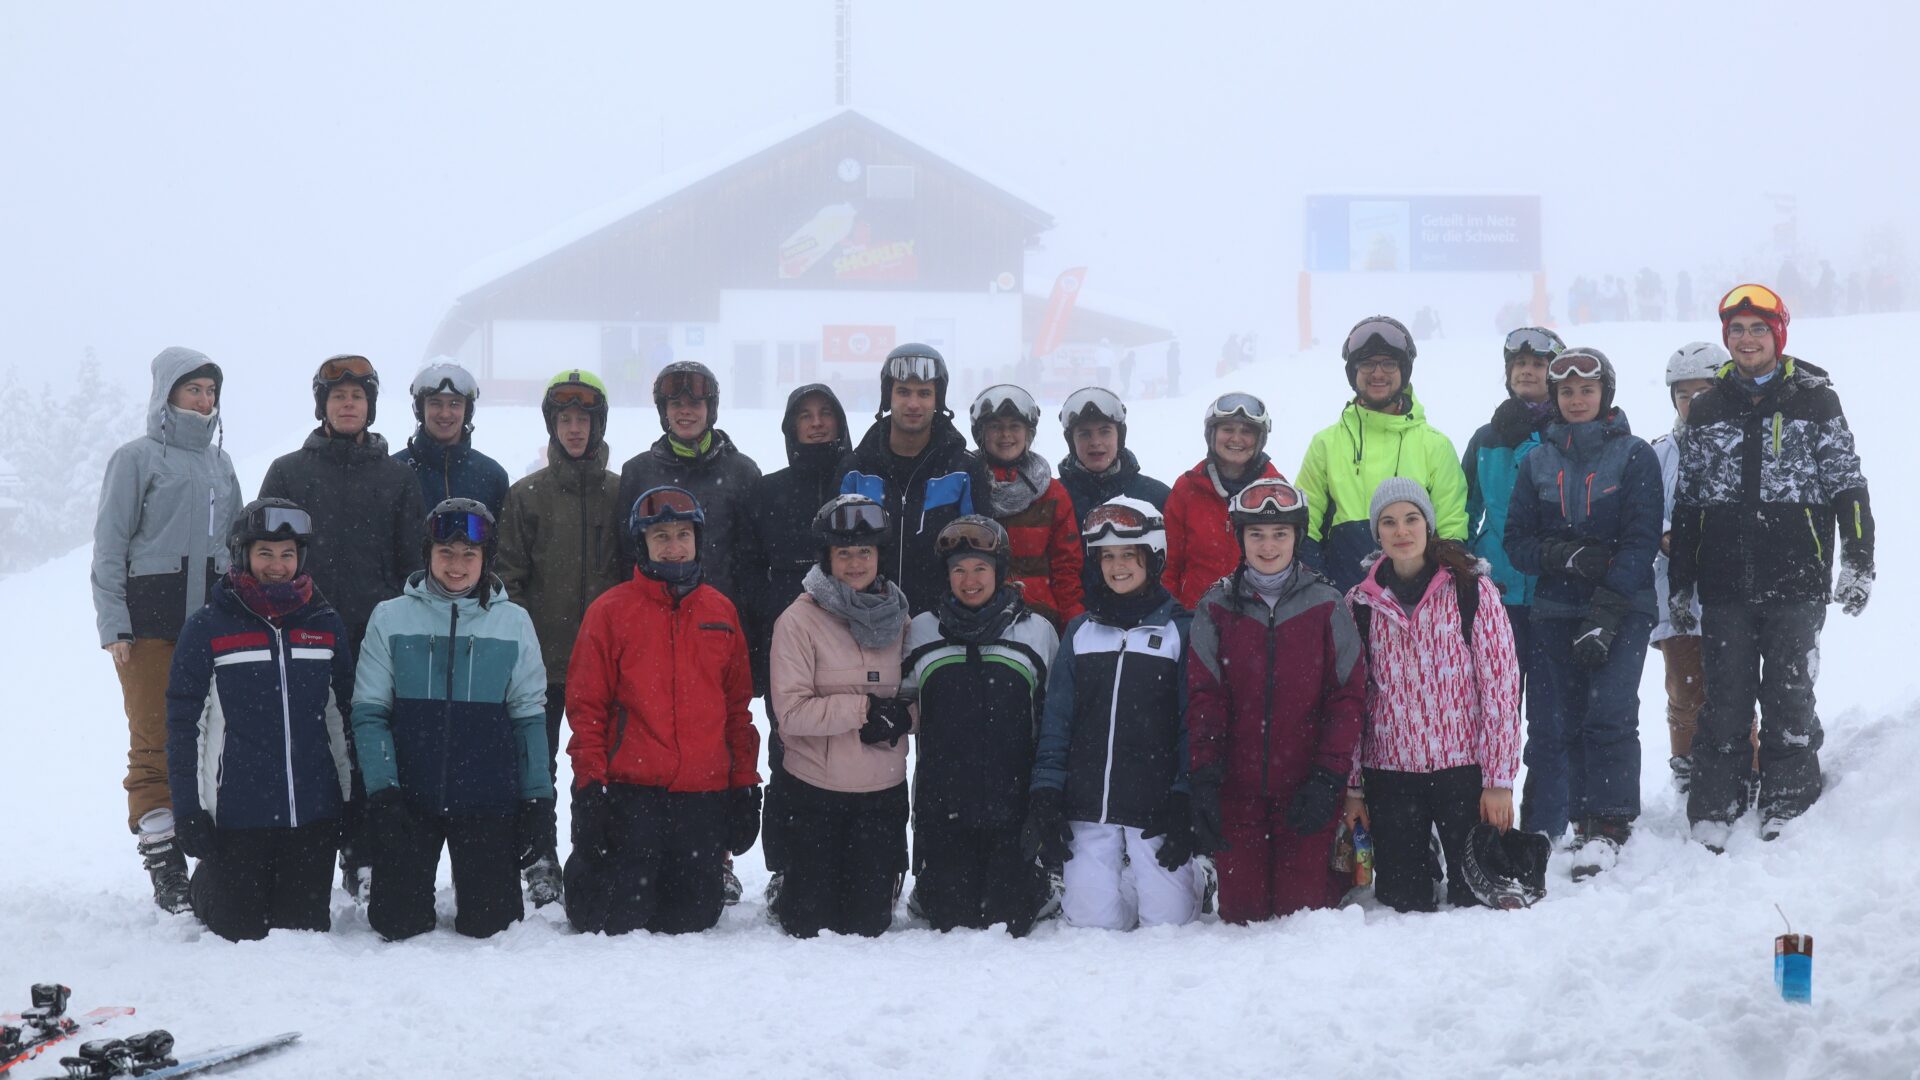 Gruppenfoto von KJBlern am Pistenrand im Schnee